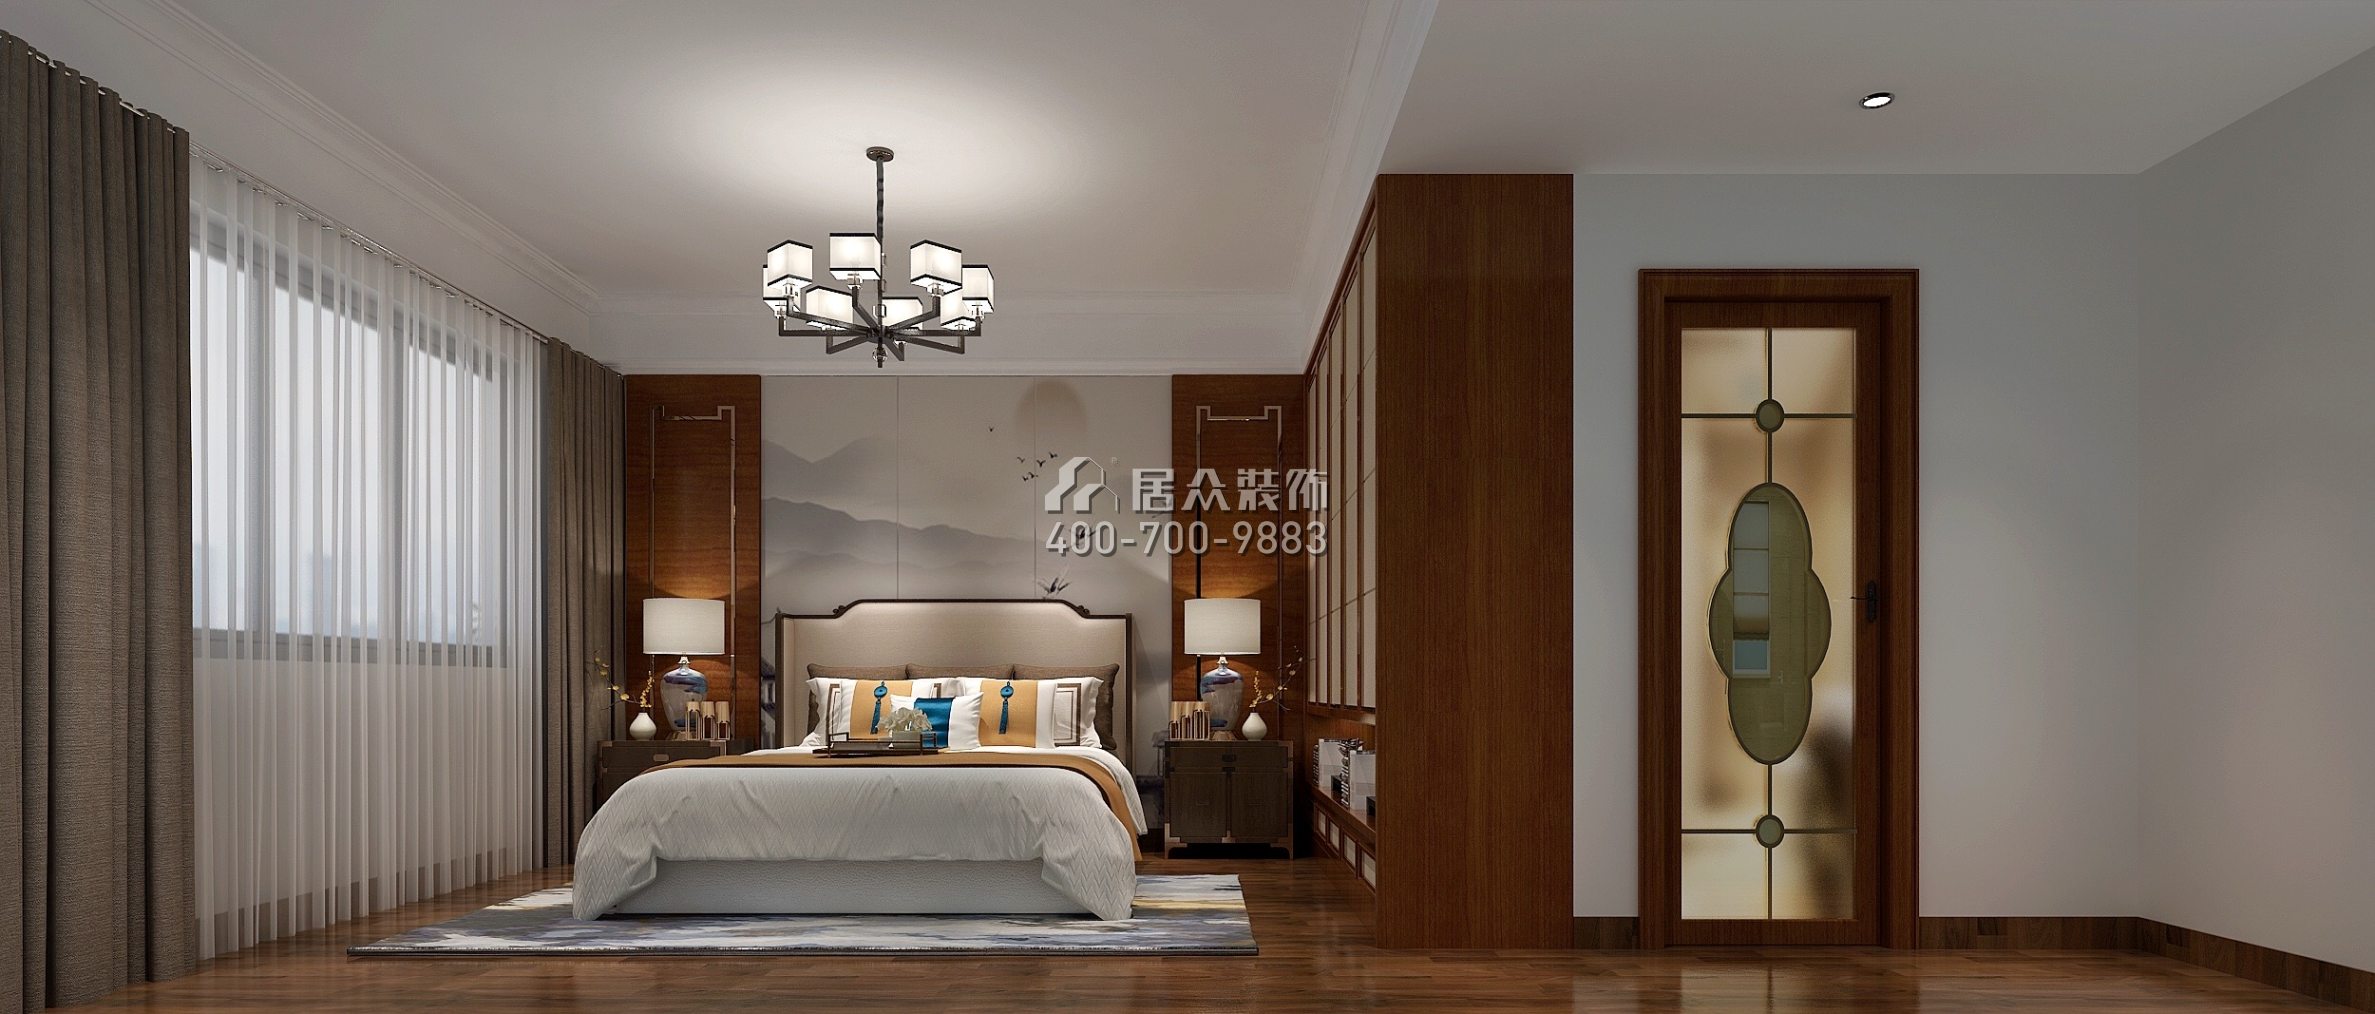 雅宝新城名门世家145平方米中式风格平层户型卧室装修效果图